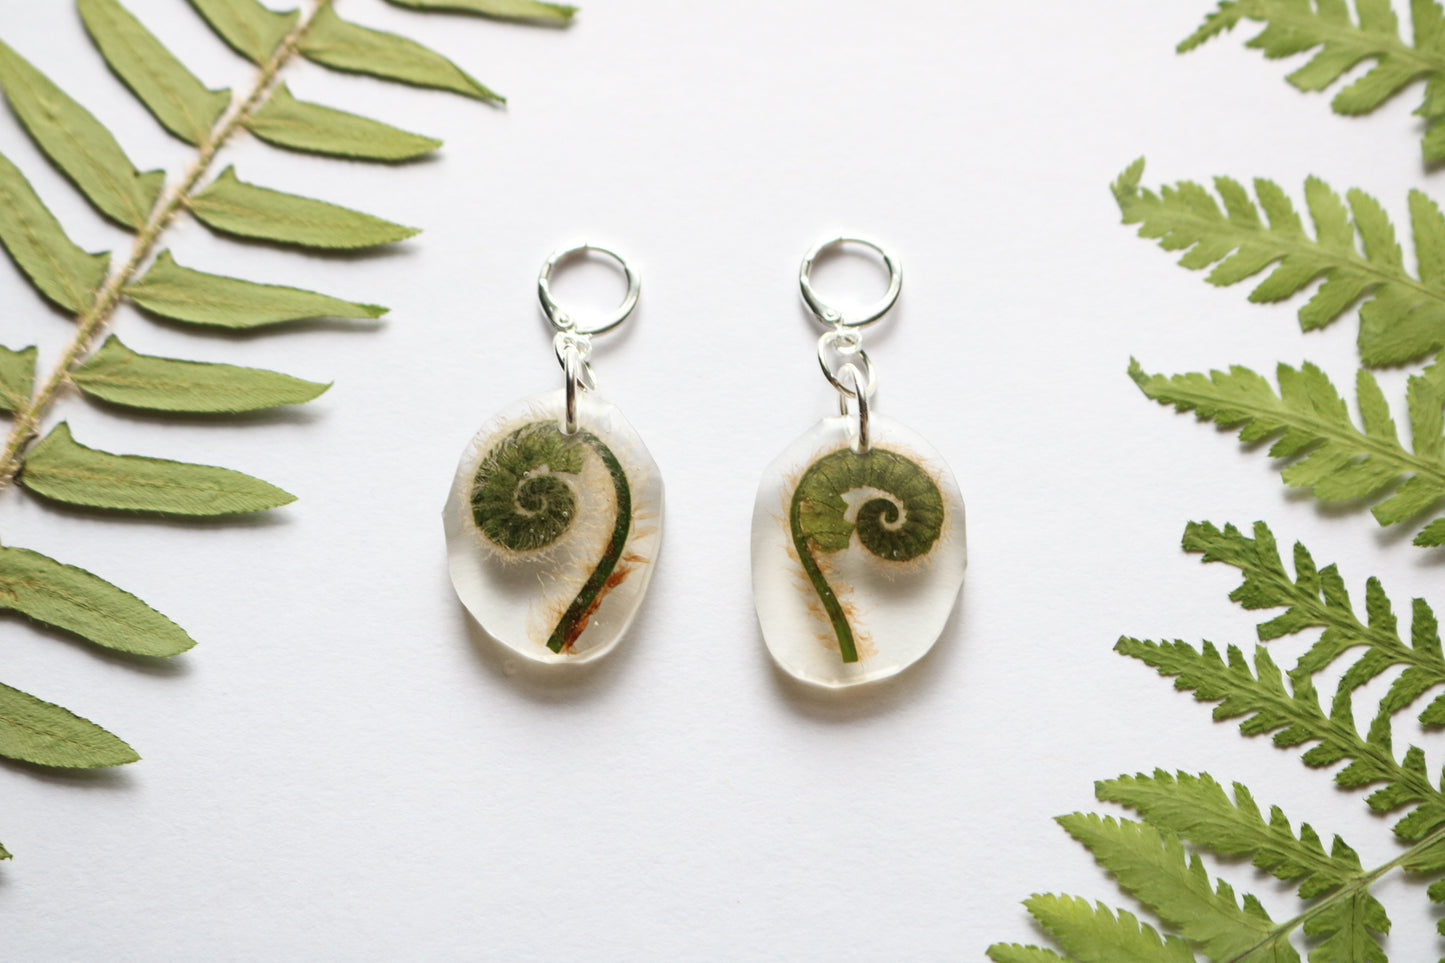 Fiddlehead fern earrings